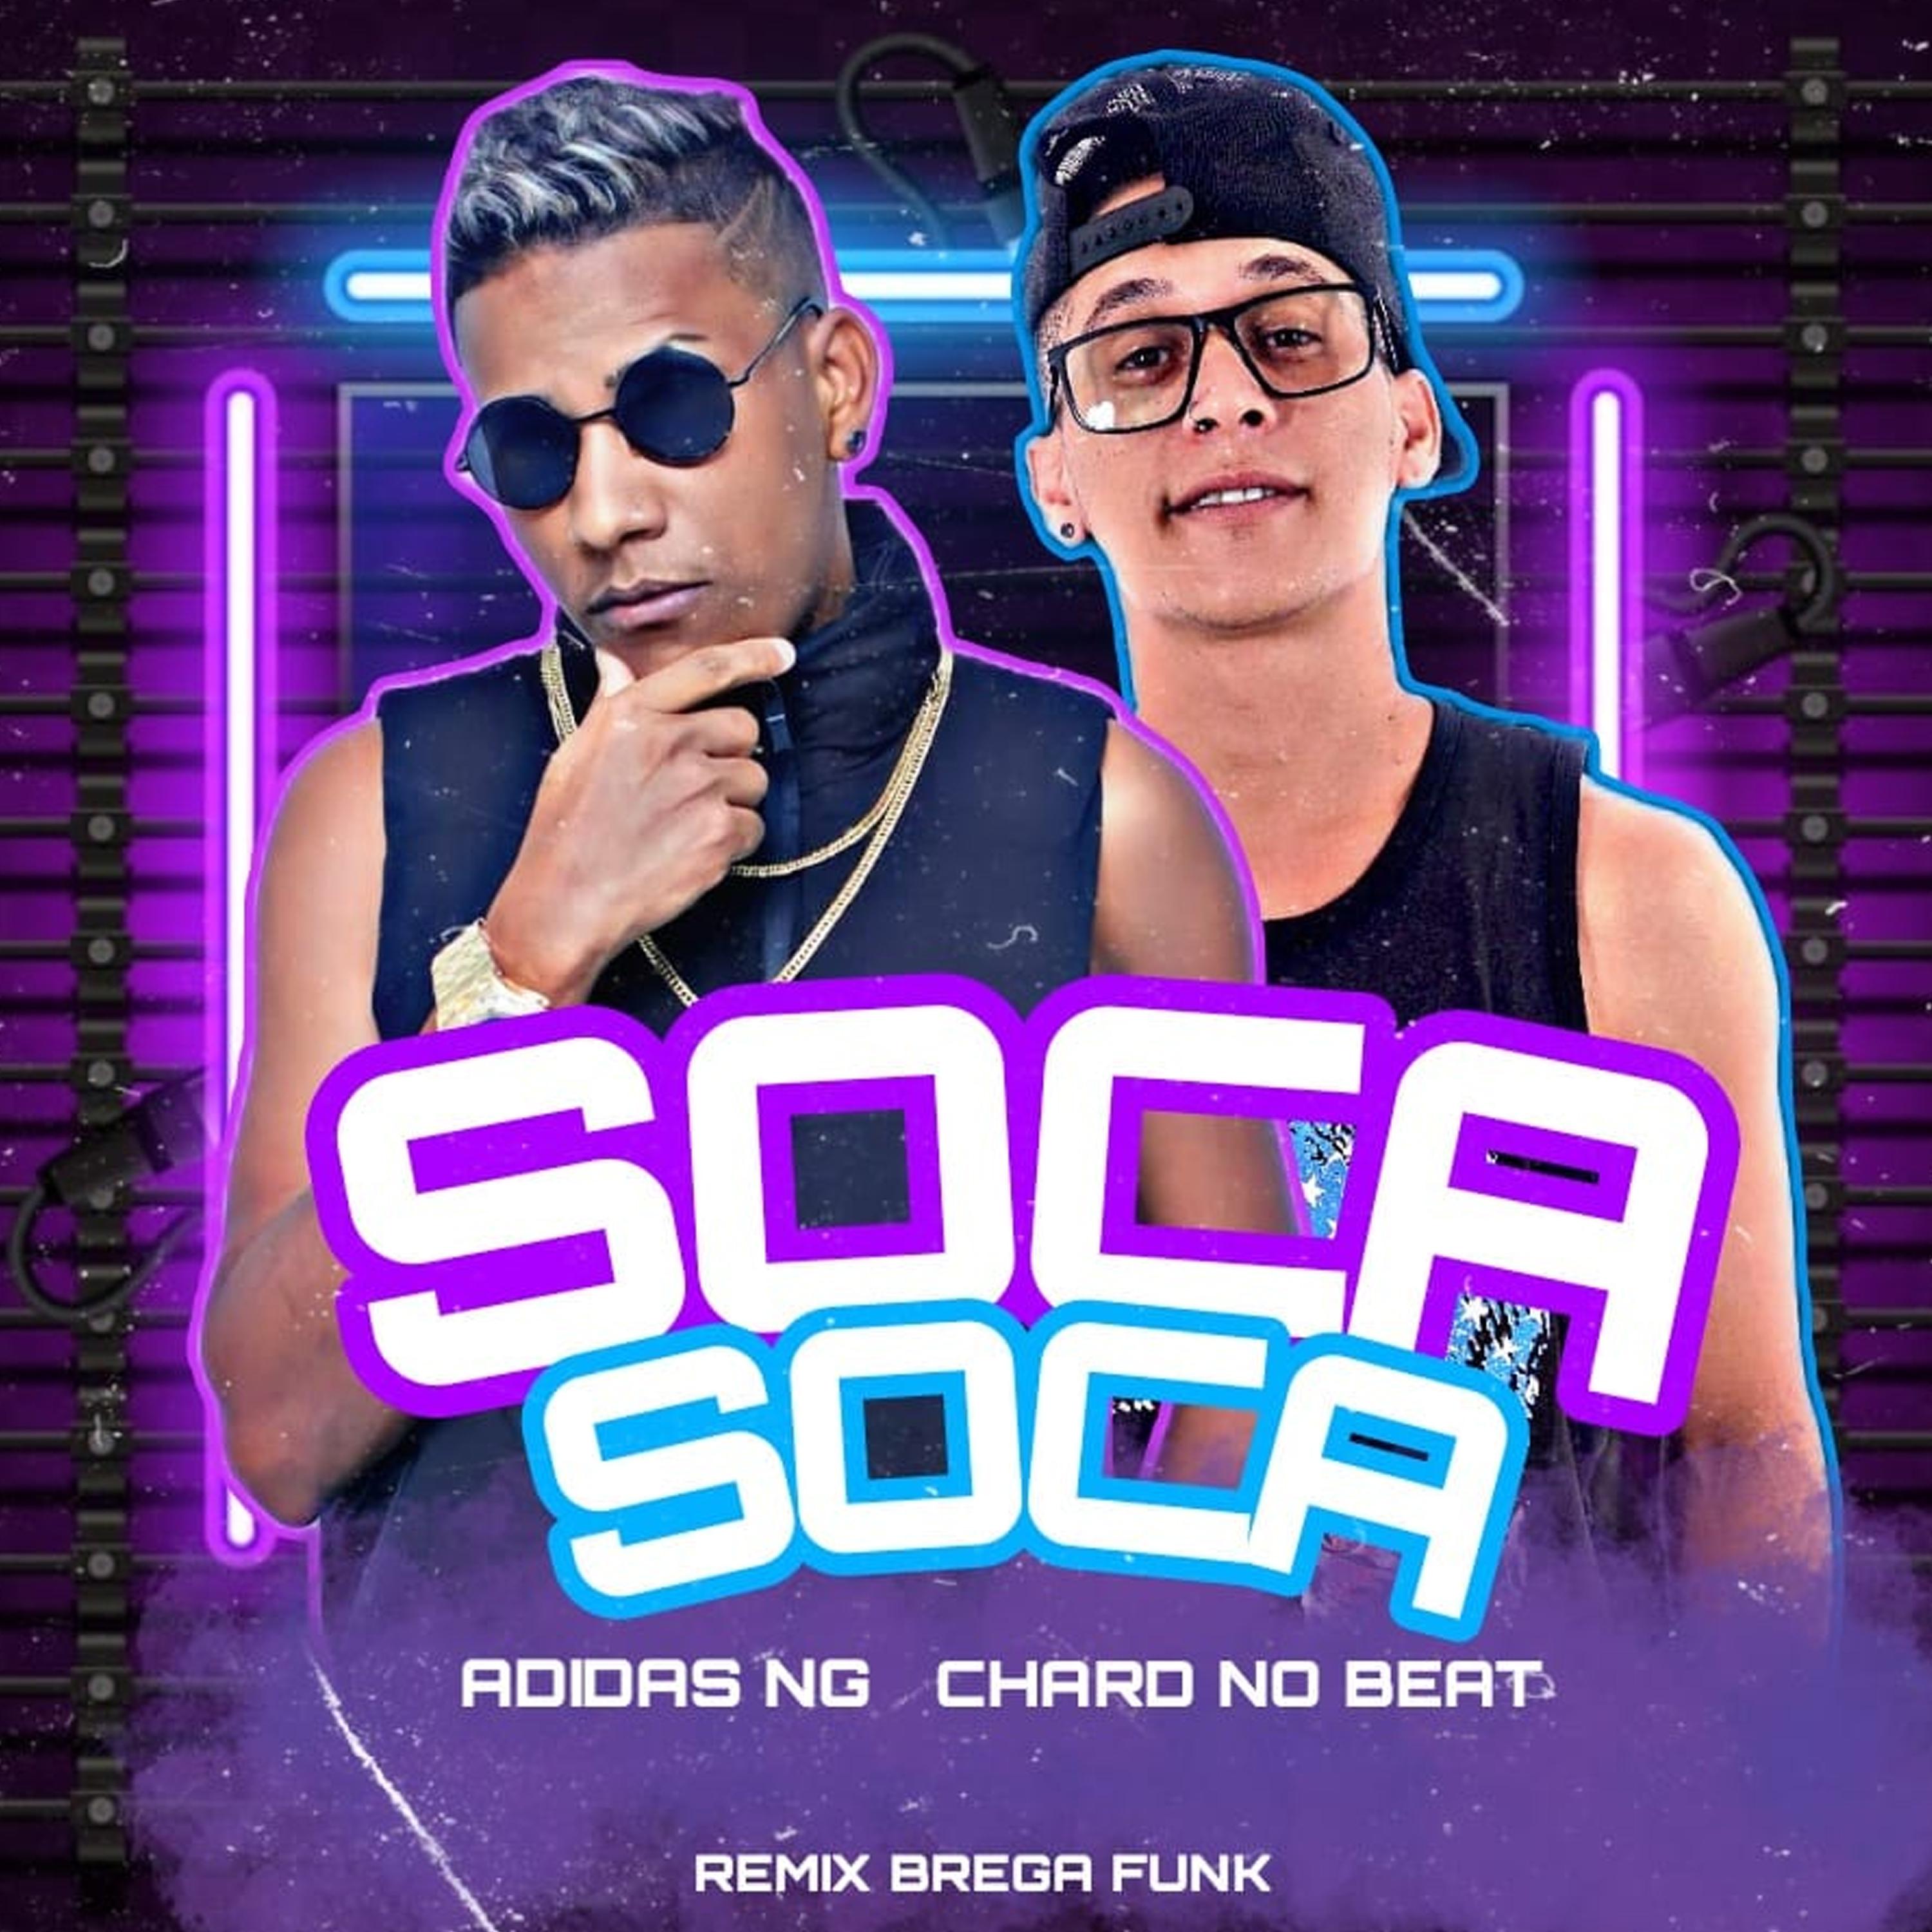 Постер альбома Soca Soca